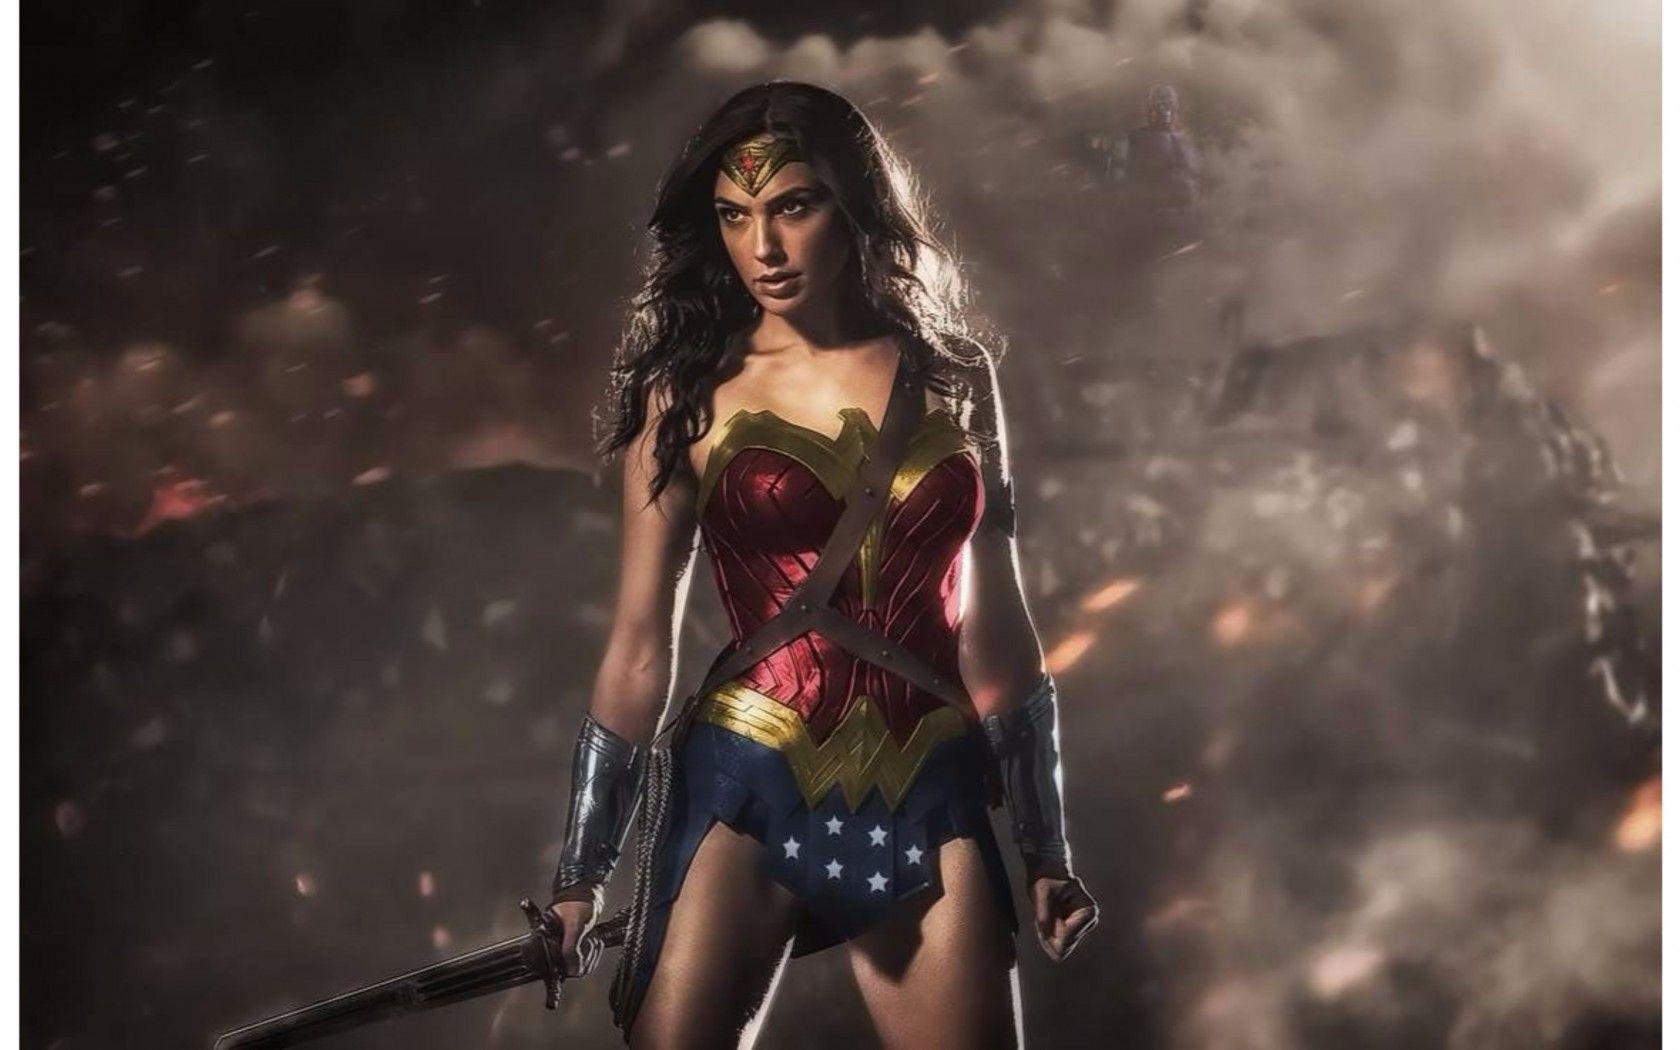 Wonder Woman 2016 Gal Gadot 4K Wallpaper. Free 4K Wallpaper